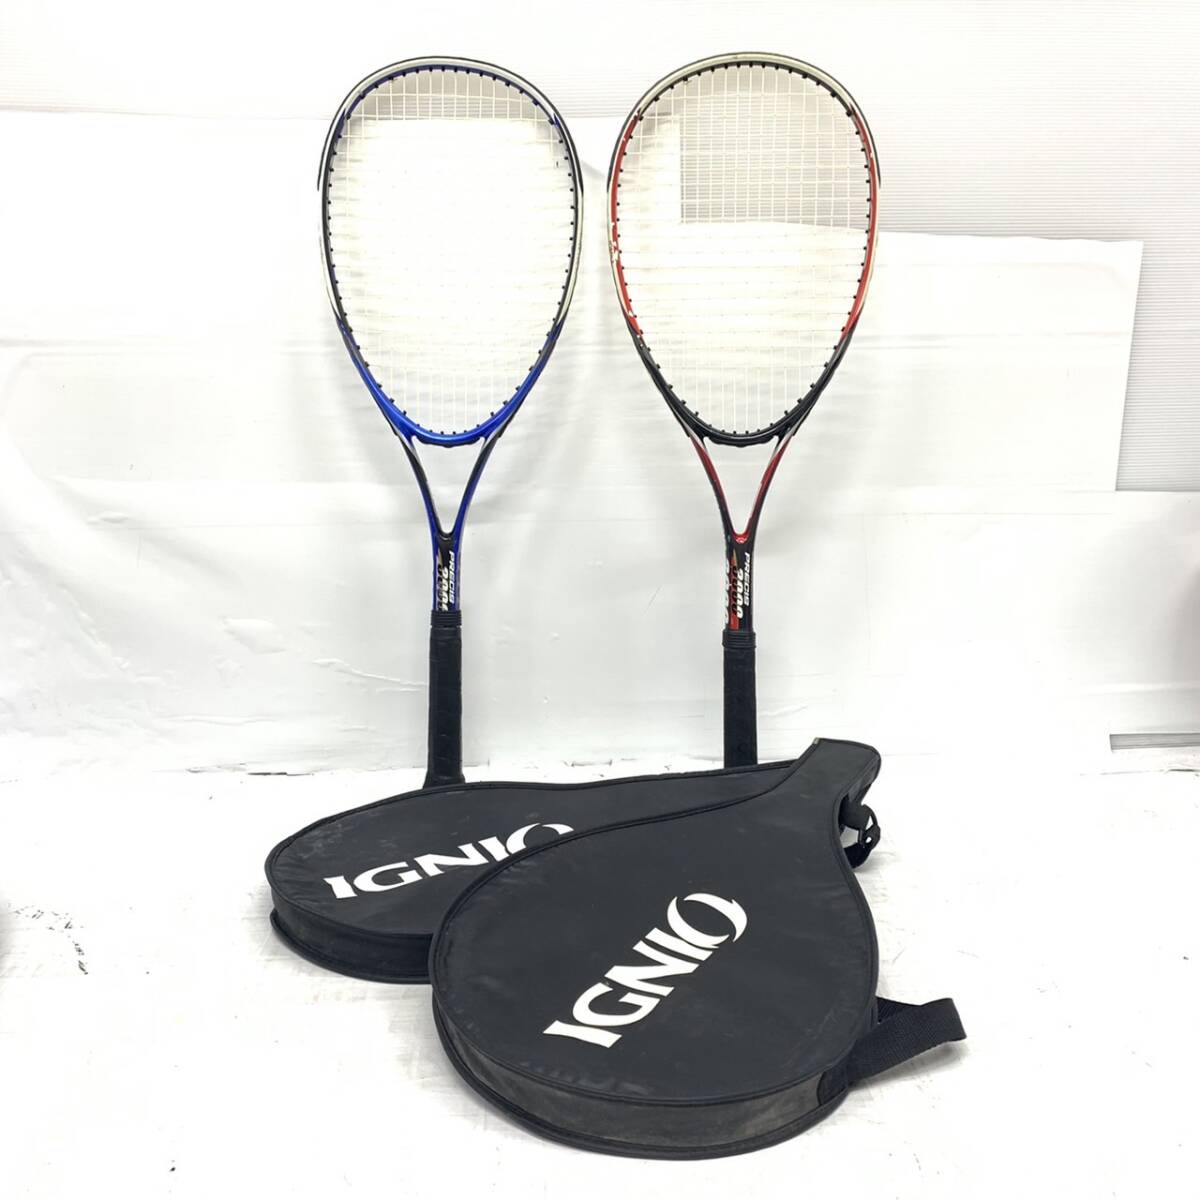 送料無料h58750 IGNIO イグニオ ソフトテニスラケット 軟式 PRECIS 3000 レッド 赤 ブルー 青 2本セット テニス スポーツ用品の画像1